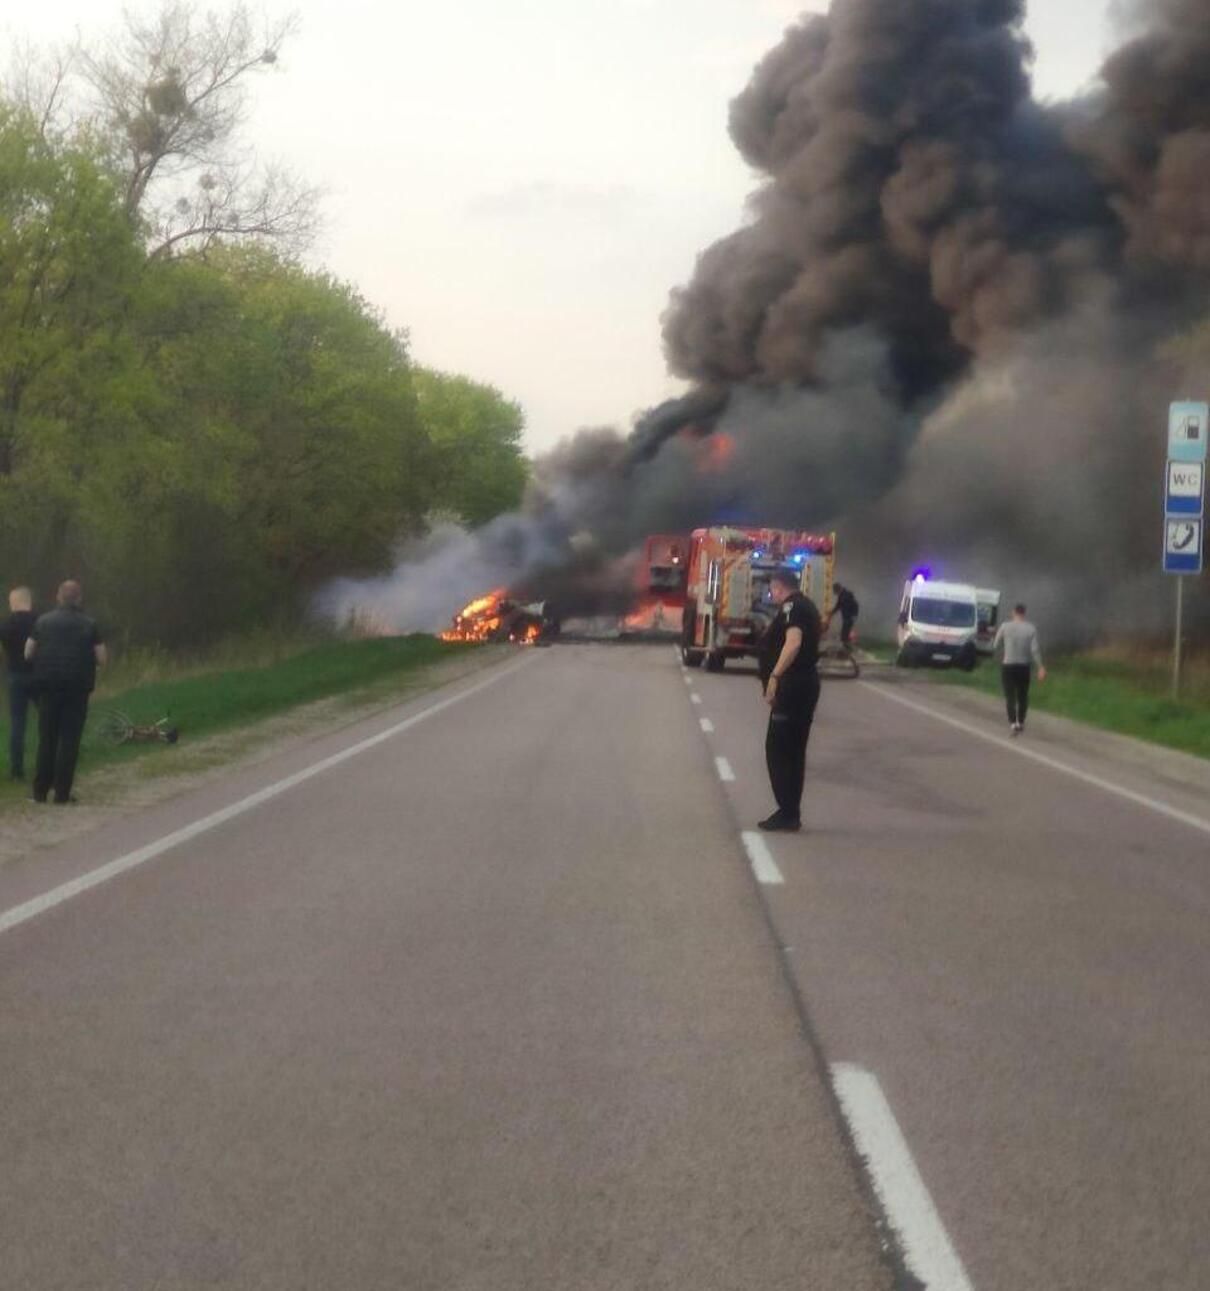 На Ровненщине столкнулись автобус с пассажирами и бензовоз: 16 погибших и десяток травмированных